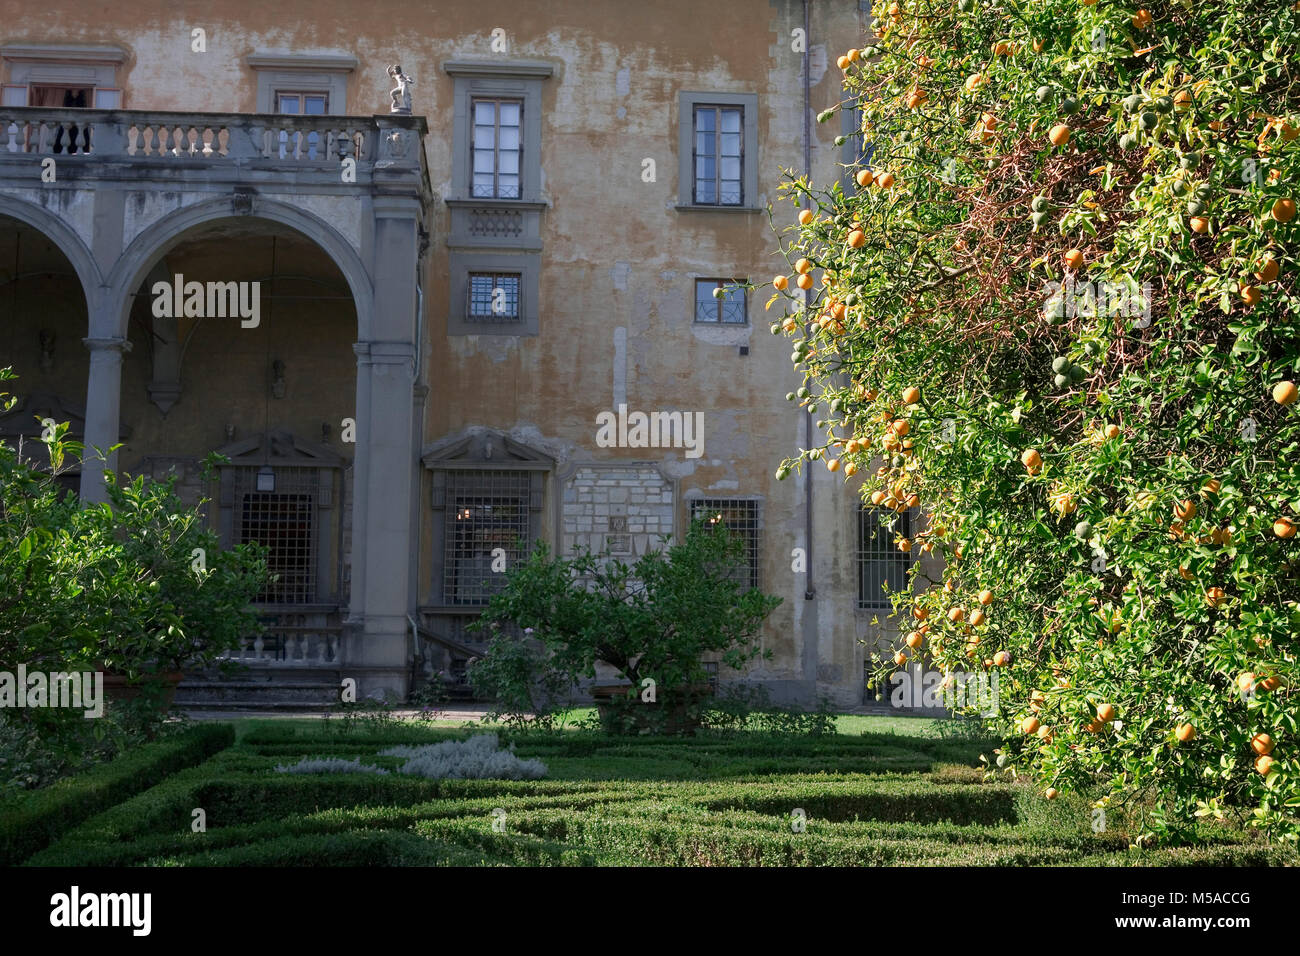 Giardino Corsini al Prato, Florenz, Toskana, Italien: Blick auf den Palast über der Box Hedging mit einer Zitrone Baum im Vordergrund. Stockfoto